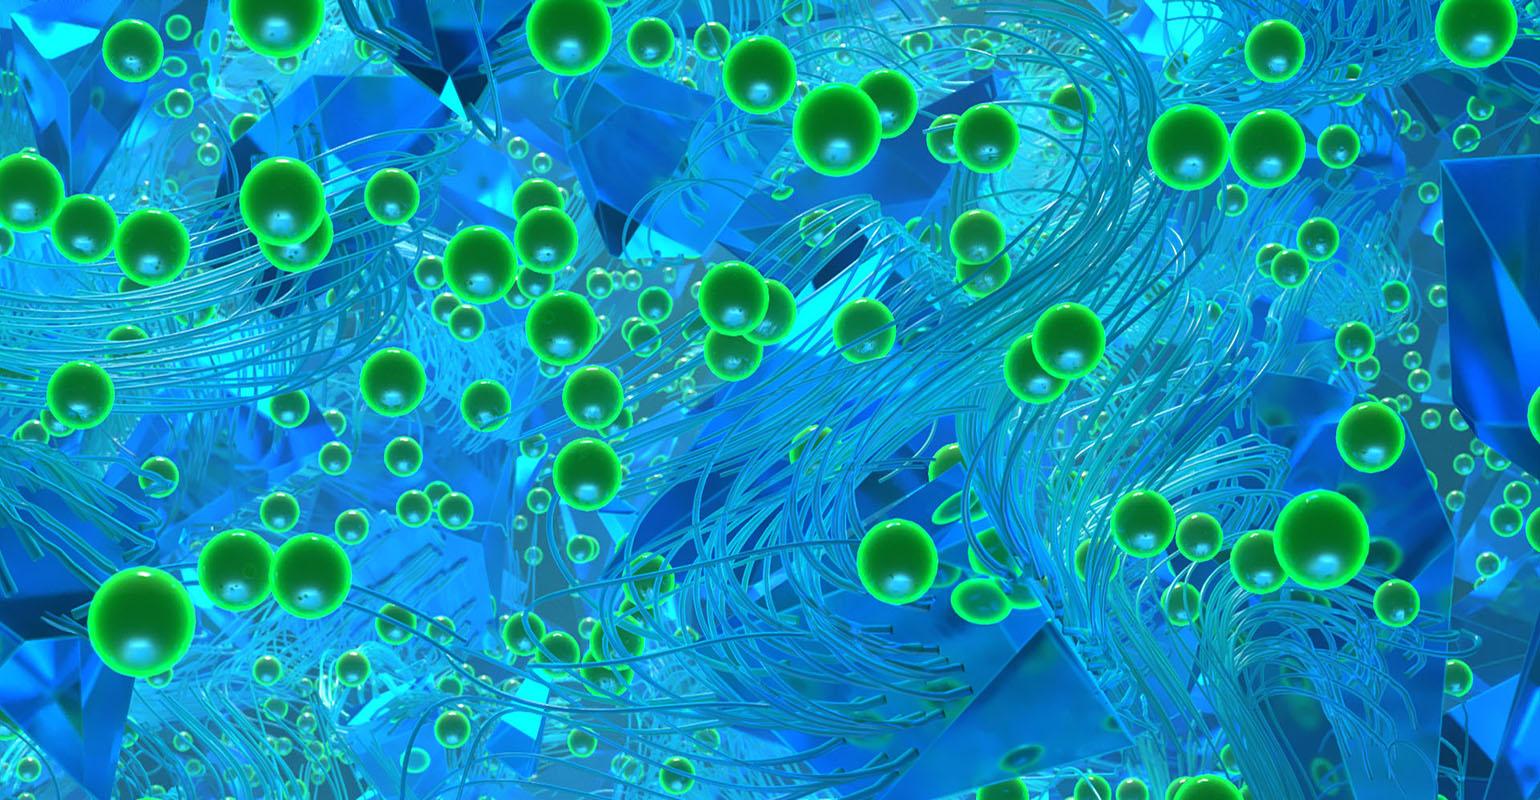 锌嵌入尼龙织物可提供优异的抗病毒性能